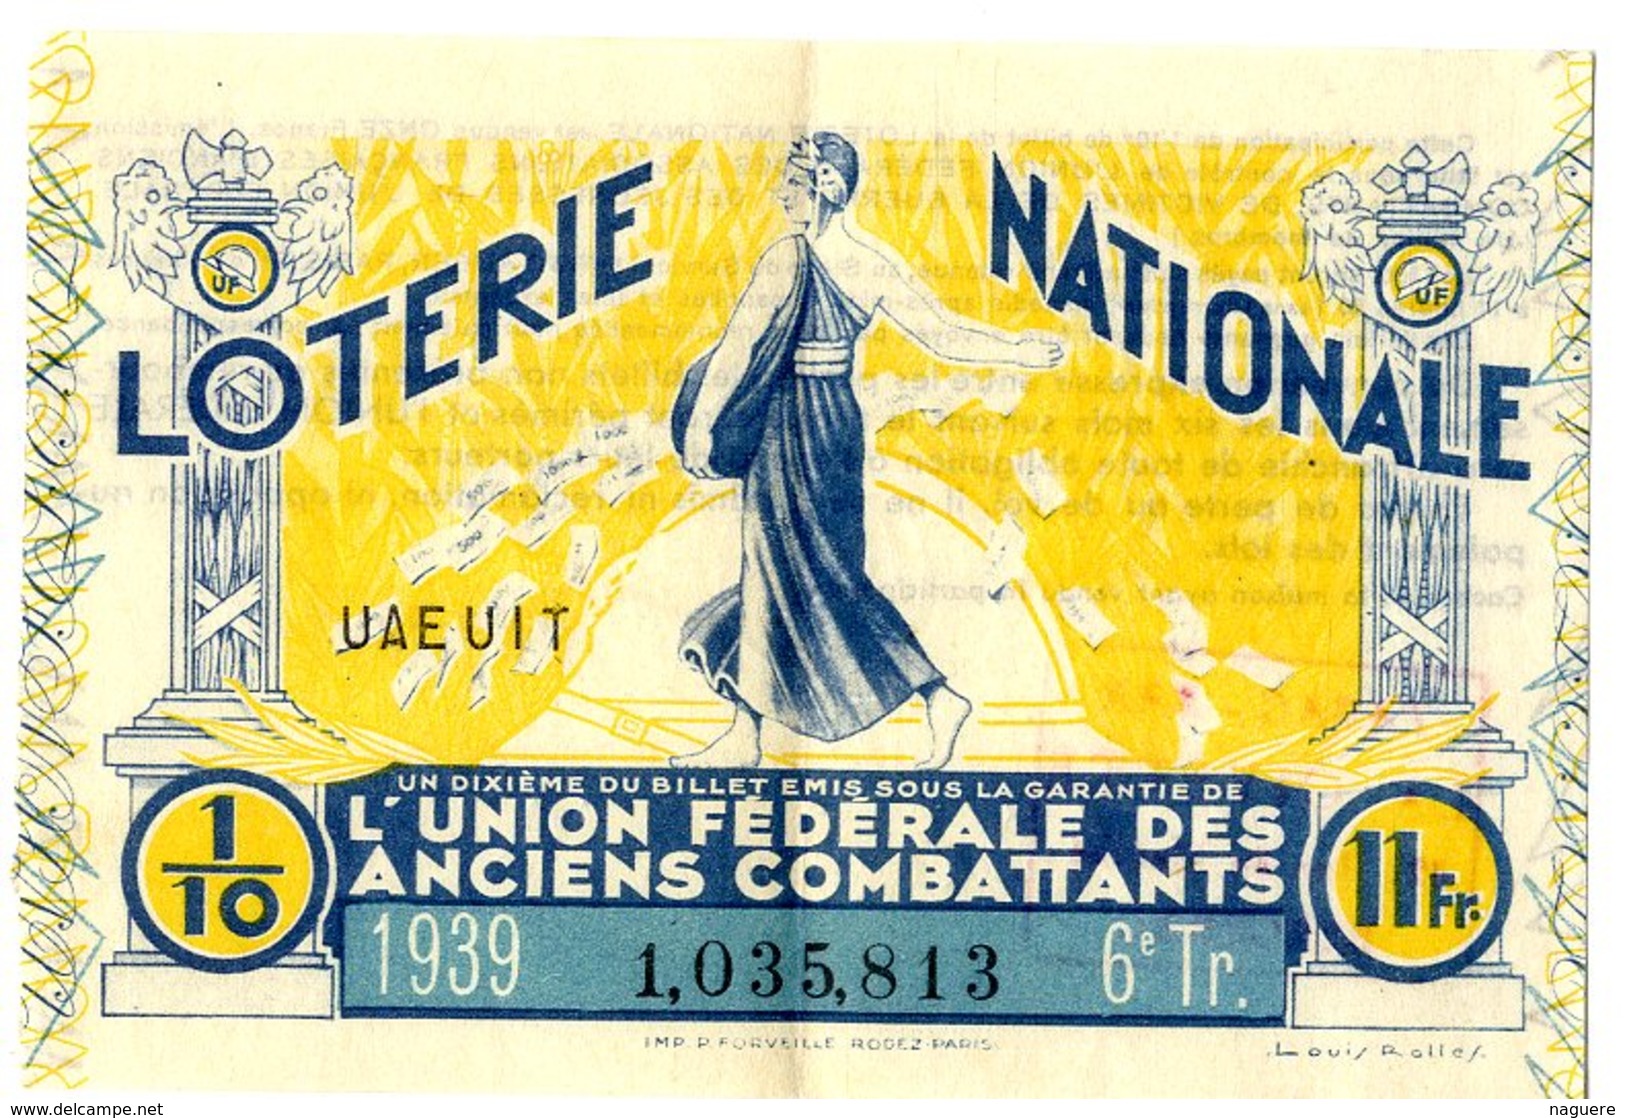 LOTERIE NATIONALE   L UNION FEDERALE DES ANCIENS COMBATTANTS  BILLET DE LOTERIE 1939  GUERRE 39 / 45 - Lottery Tickets